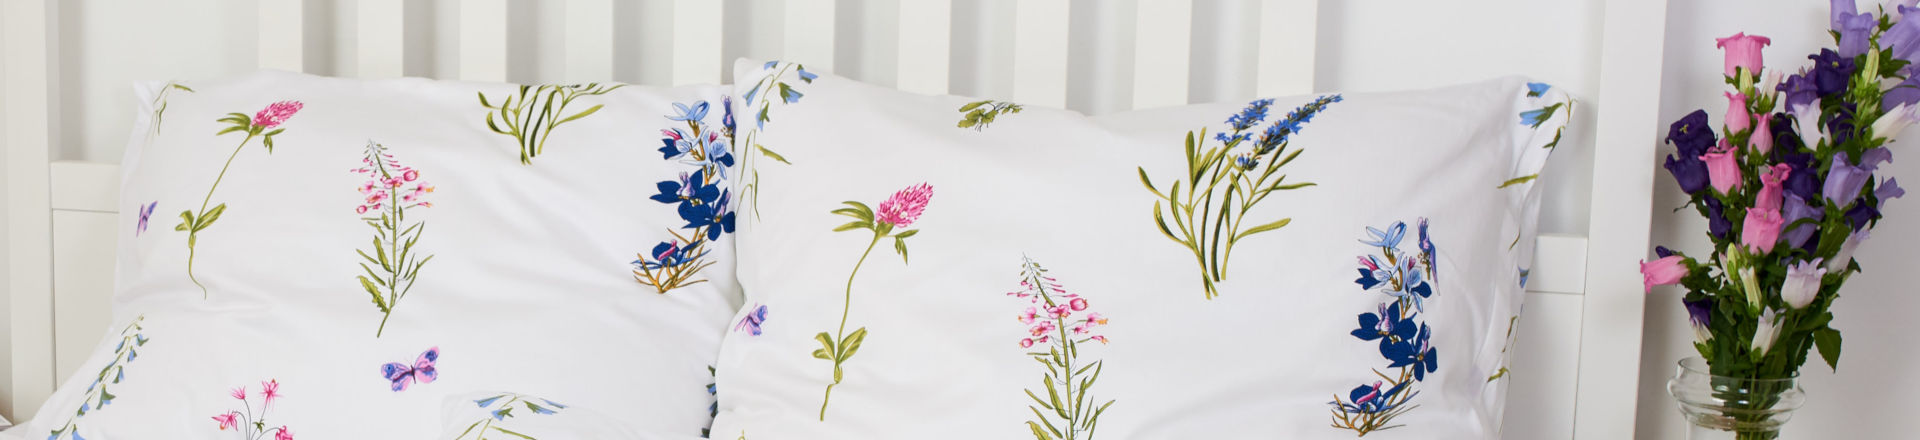 SCANquilt povlečení na posteli s letním motivem květin.